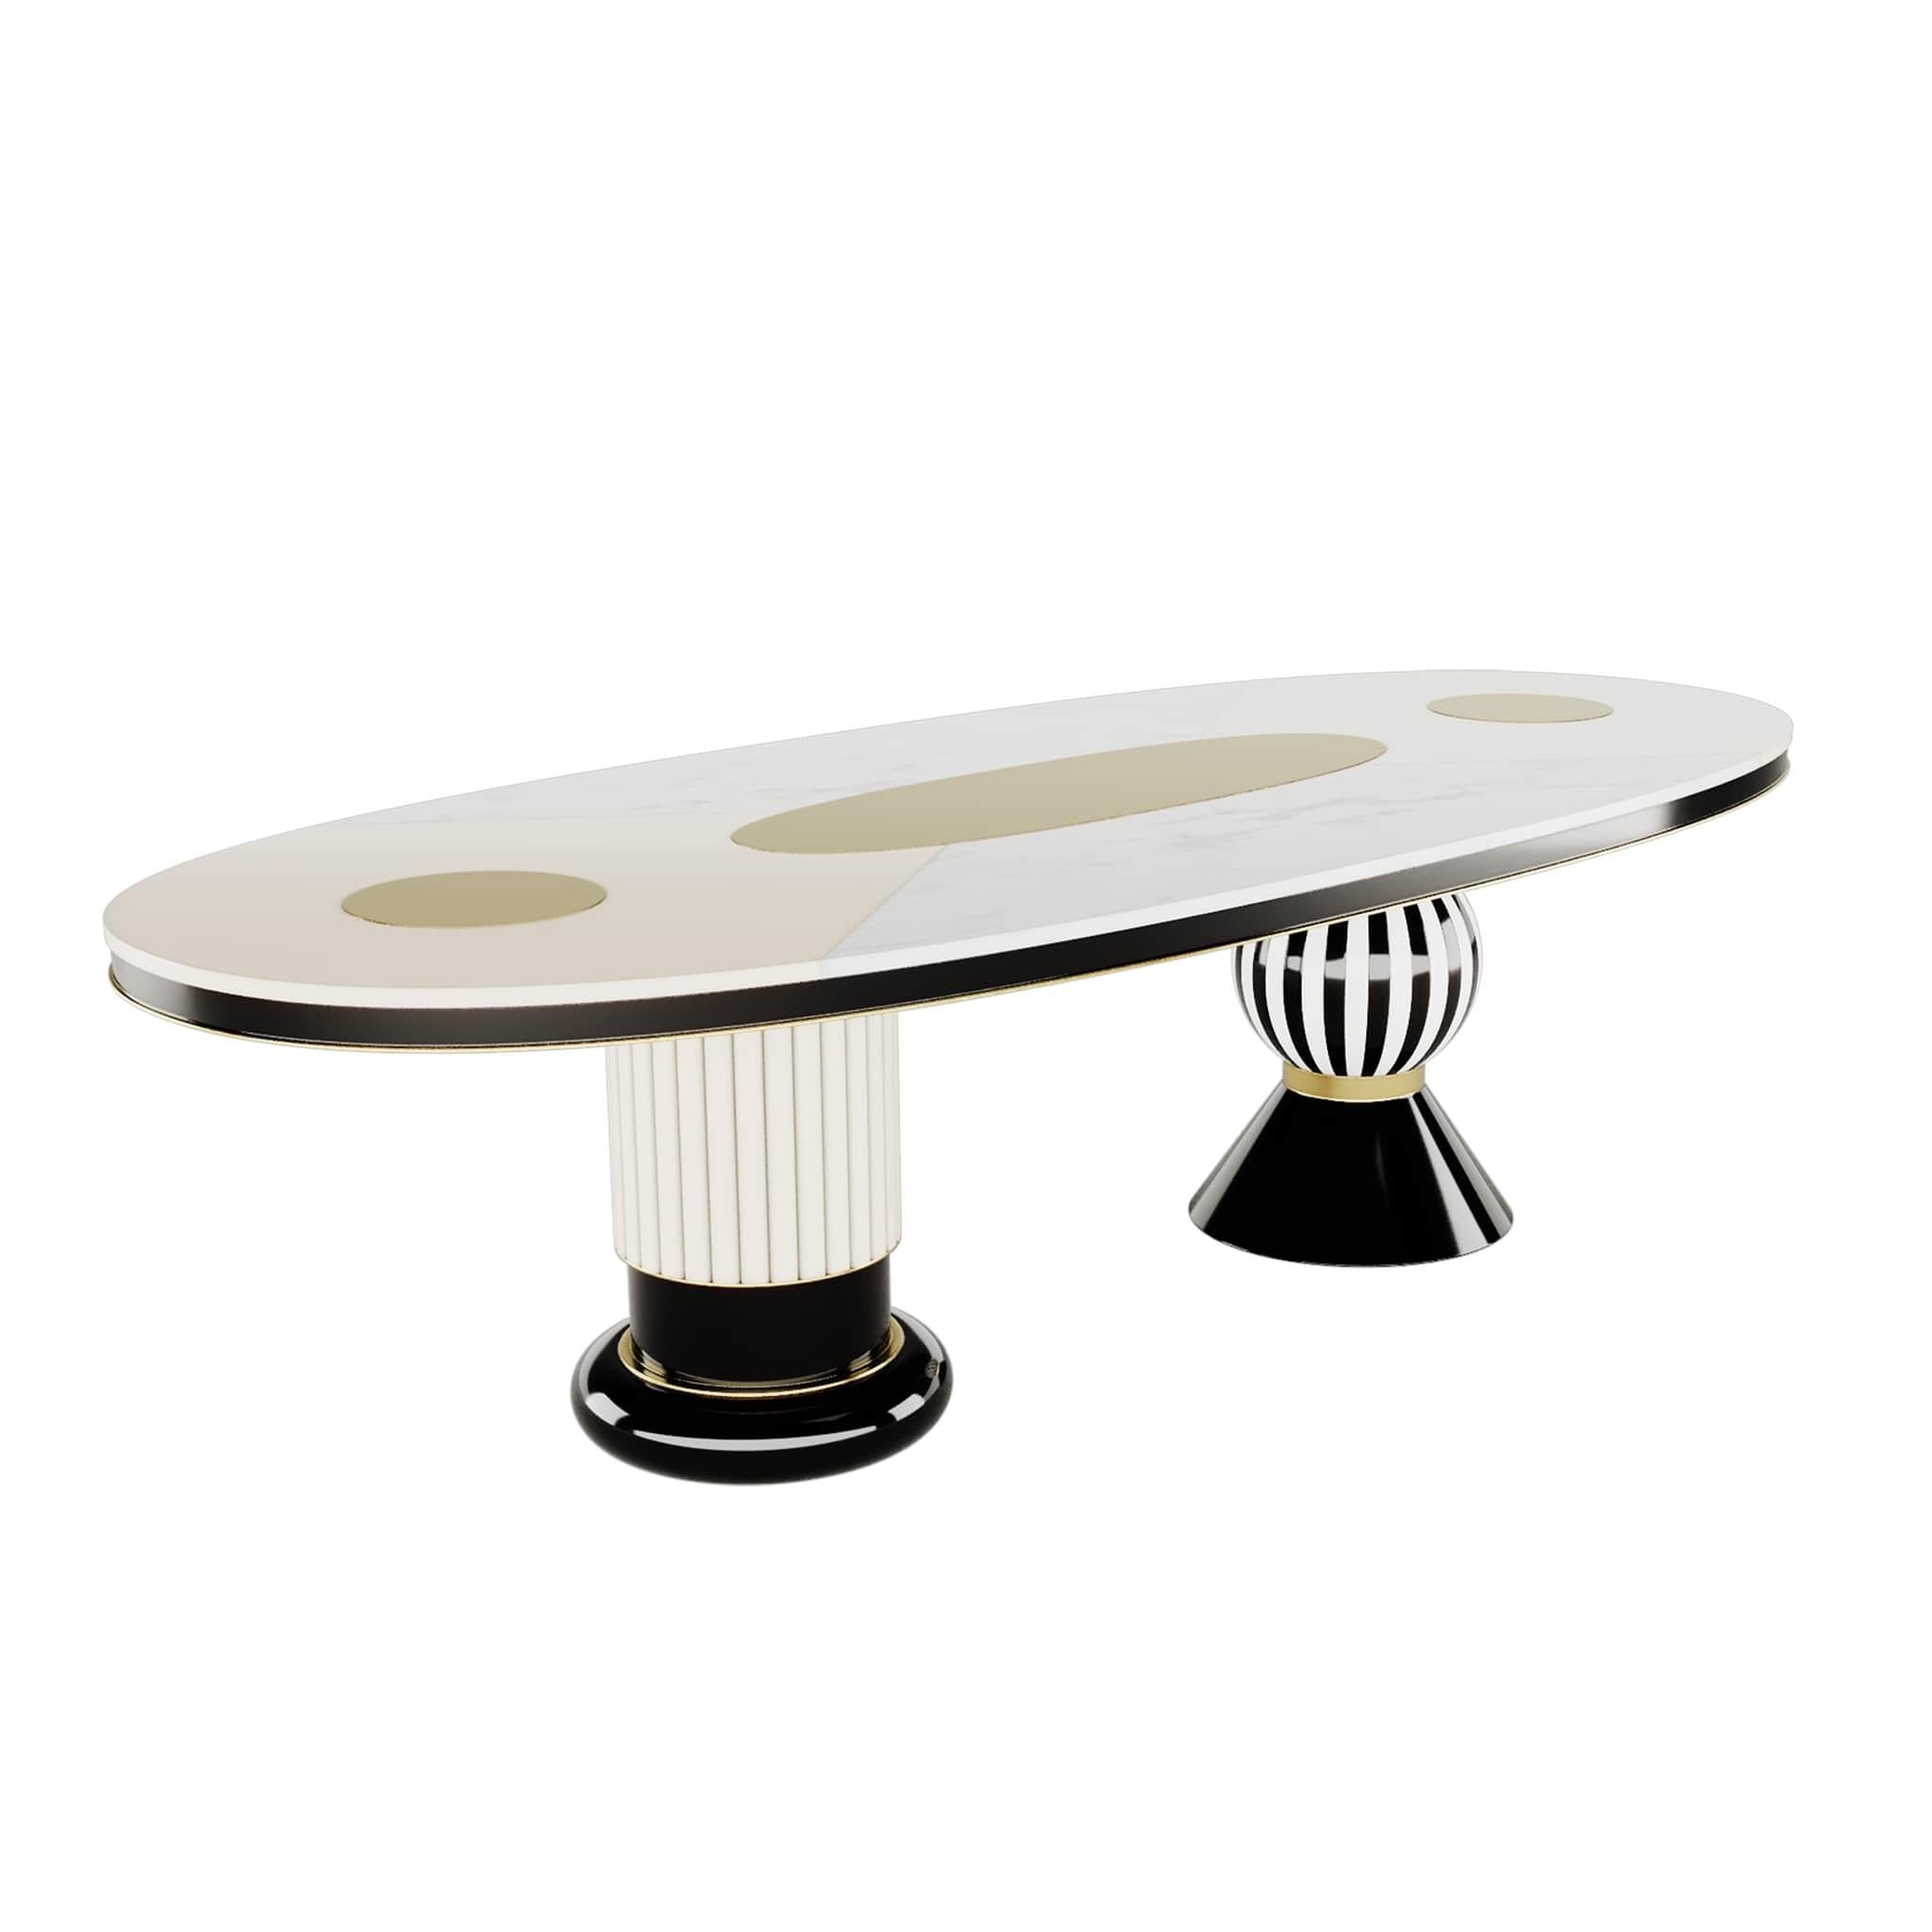 Table de salle à manger ovale moderne Plateau noir et blanc, détails en acier inoxydable doré   Table de salle à manger Fuschia
La table de salle à manger Fuschia renoue avec le charme et le charisme du style Memphis. Une table de salle à manger en